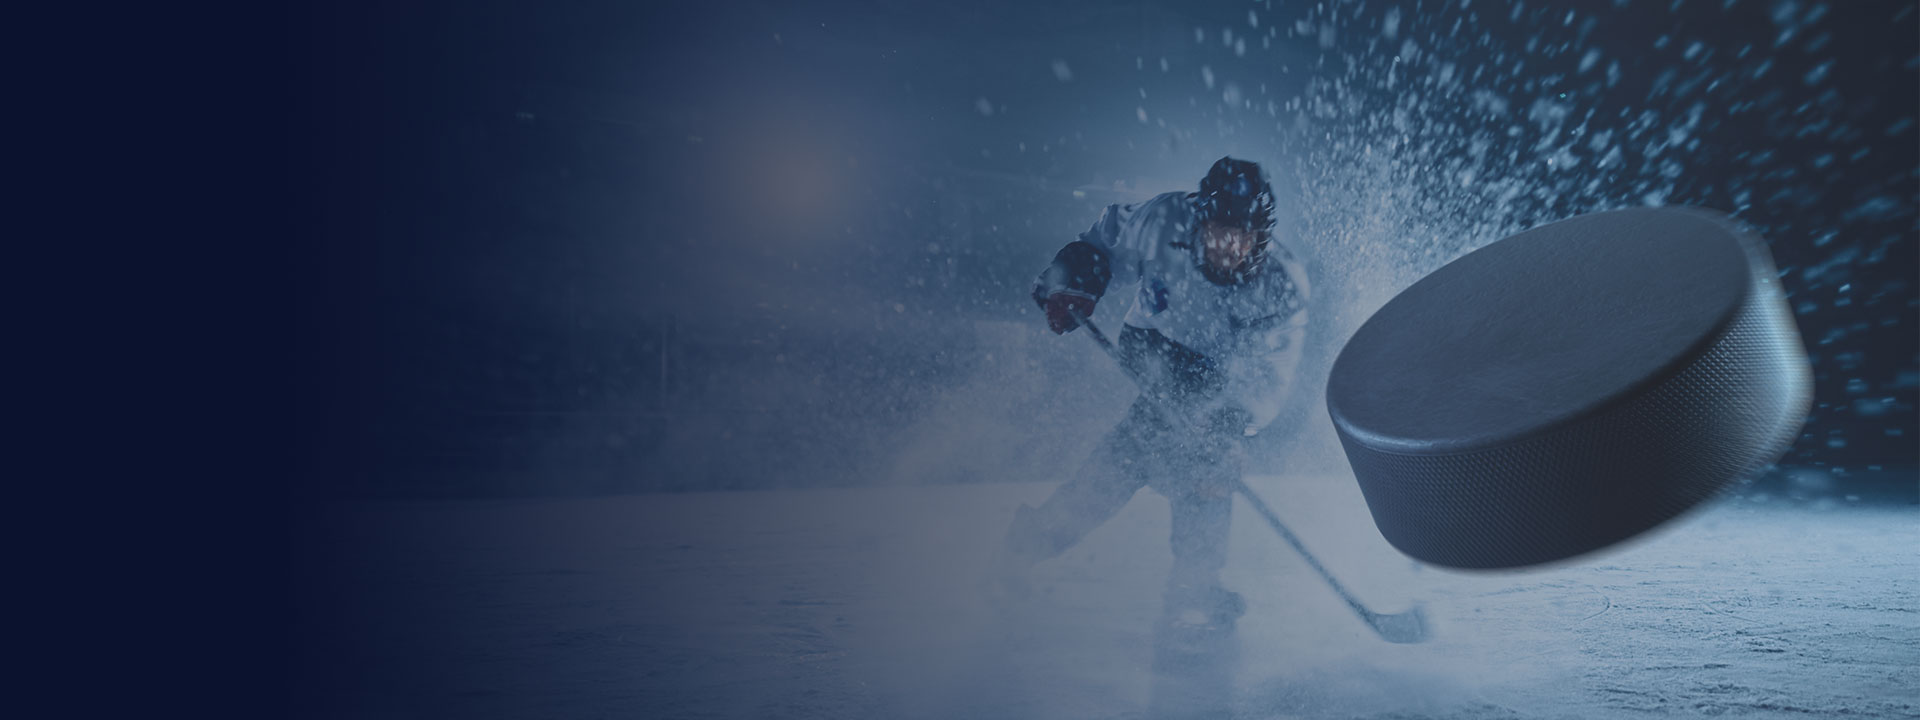 Königswege Sports: Finanzberatung für Profisportler im Eishockey - Jetzt Termin bei deinem Control Breakout Team vereinbaren